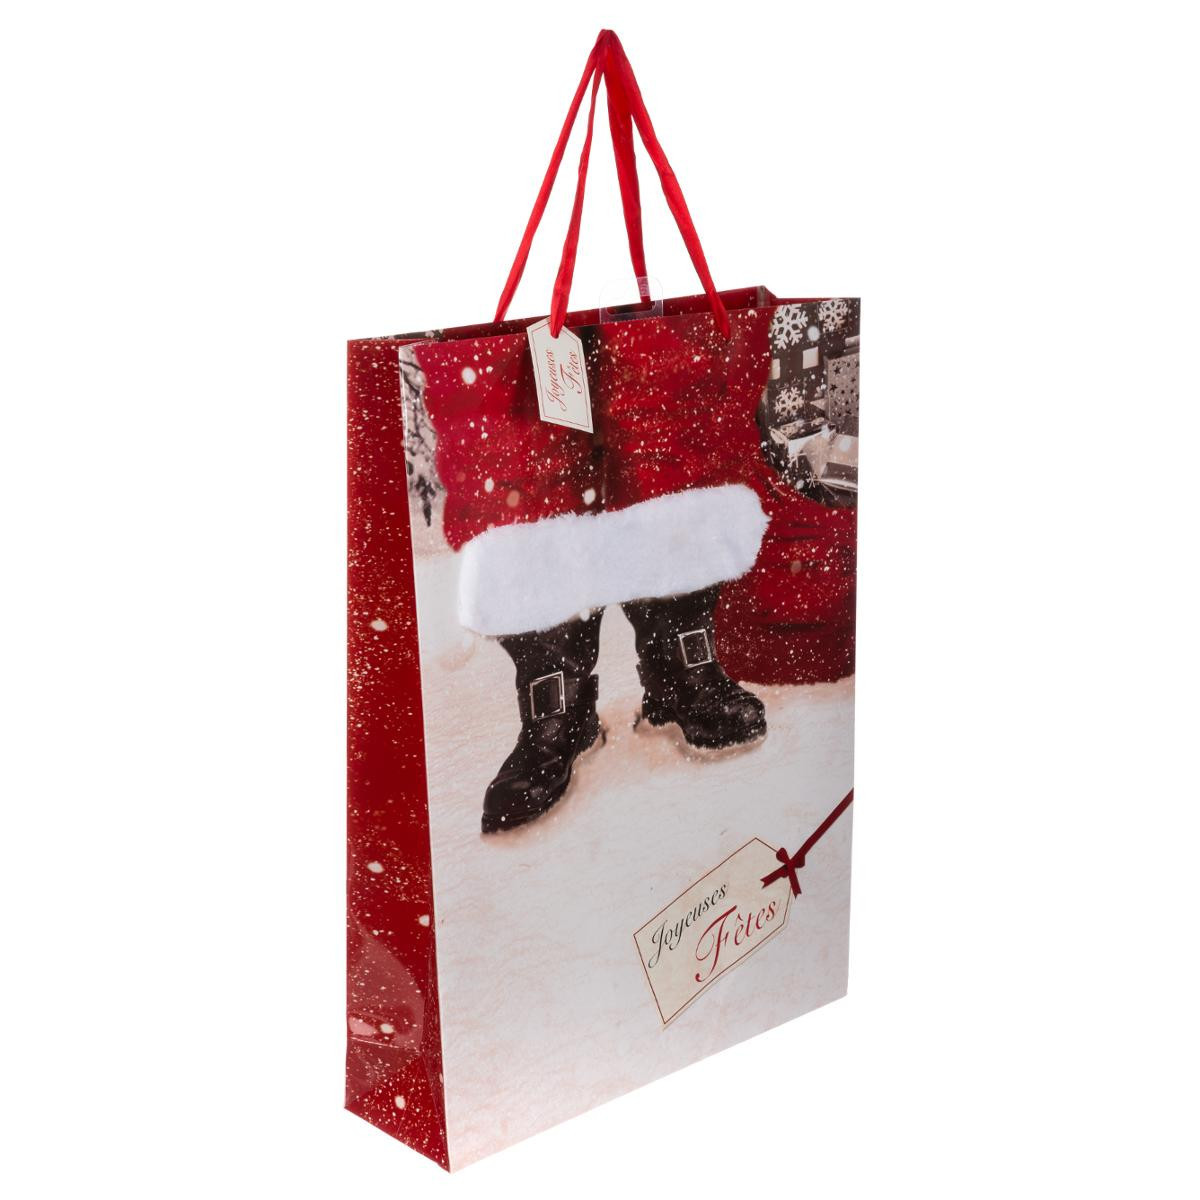 Sac Cadeau de Noël Grand Modèle Père Noël avec Fourrure Les incontournables  - Boites, sacs cadeaux, papiers cadeaux - Décomania